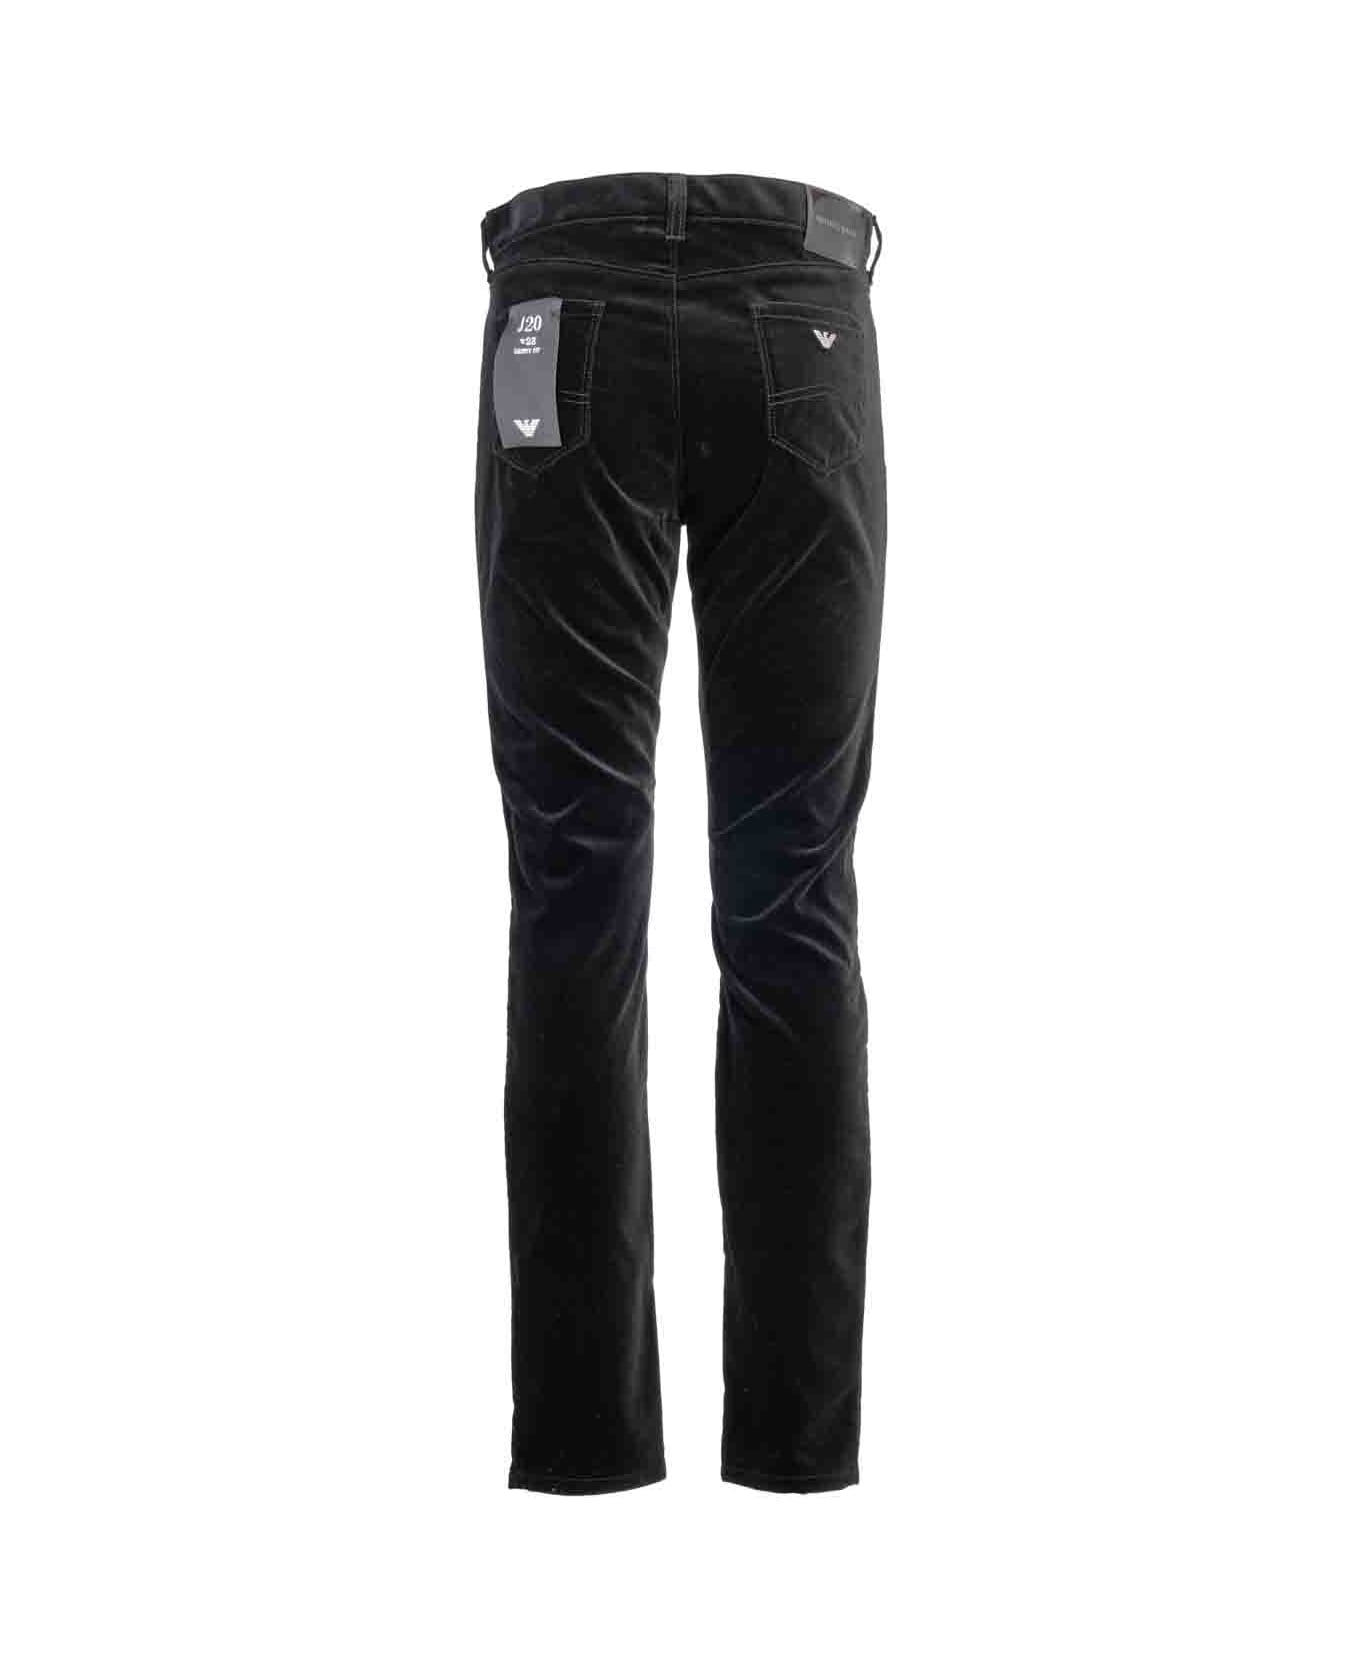 Giorgio Armani Emporio Armani Jeans Black - Black